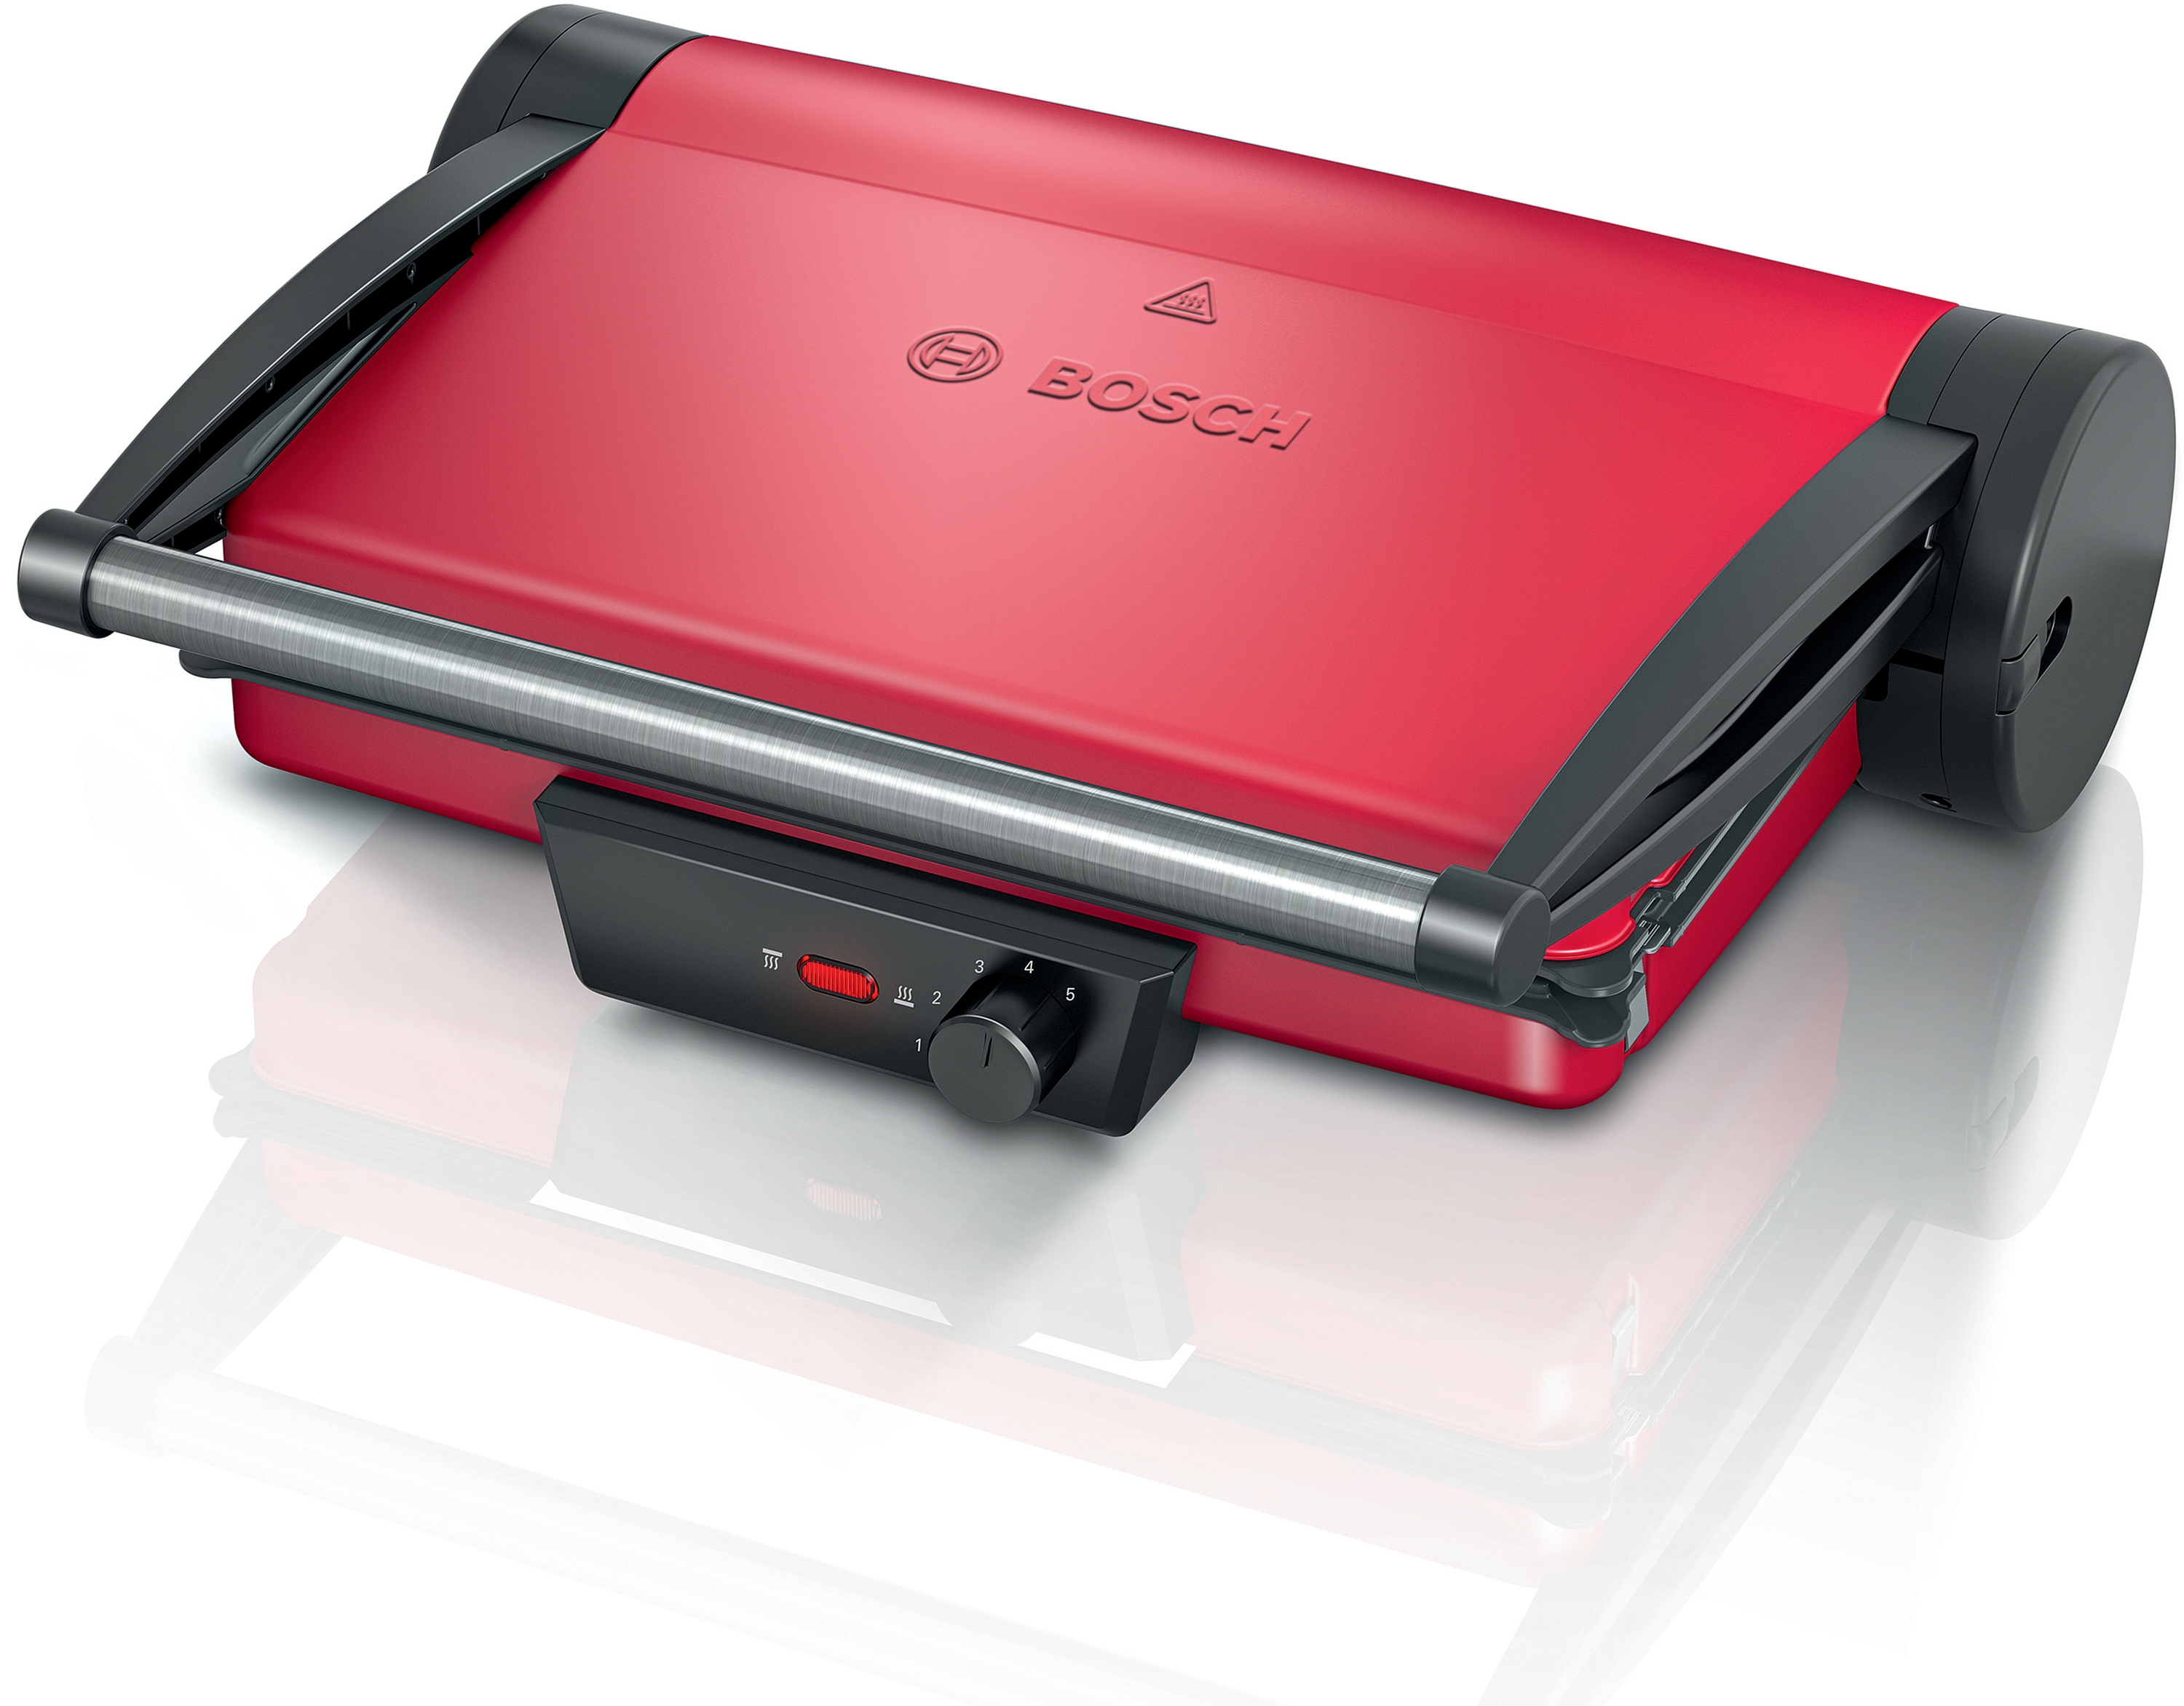 Gratar electric Bosch TCG4104 2000 W Red 